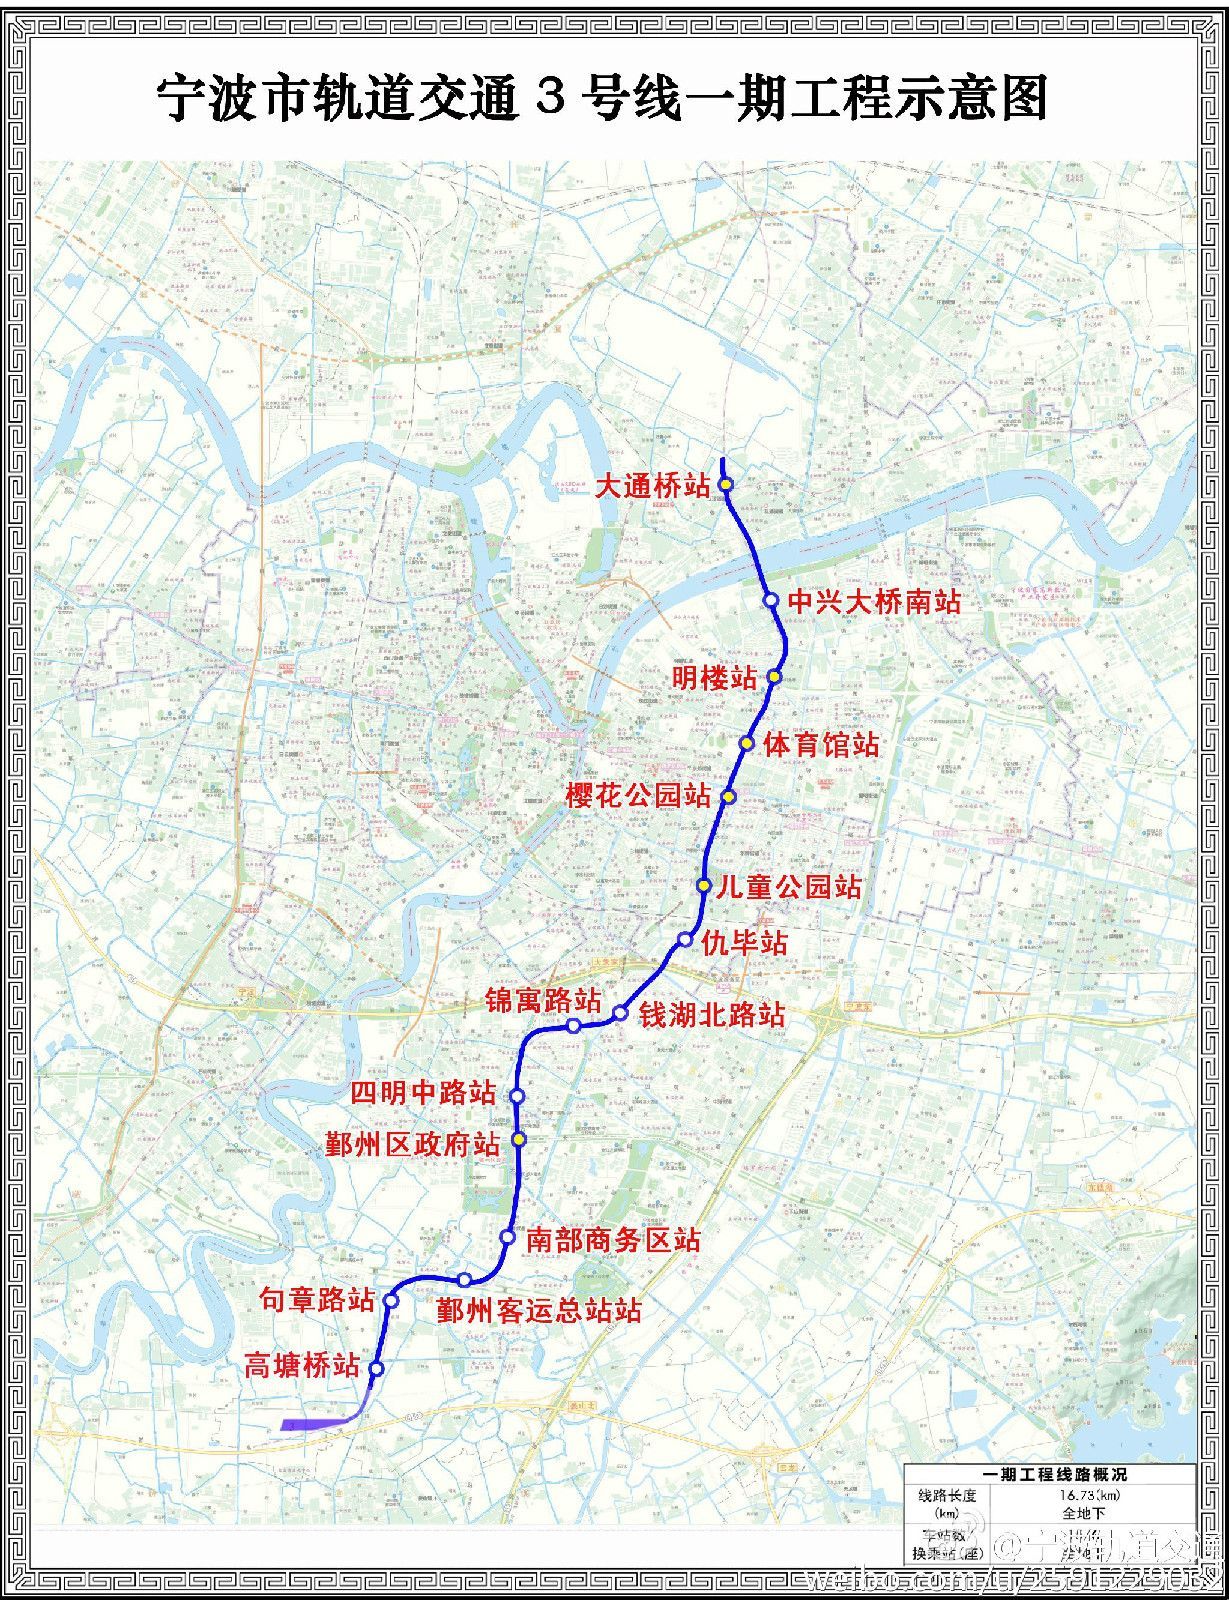 线(公司)宁波轨道交通3号线是中国浙江省宁波市建设中的一条地铁线路